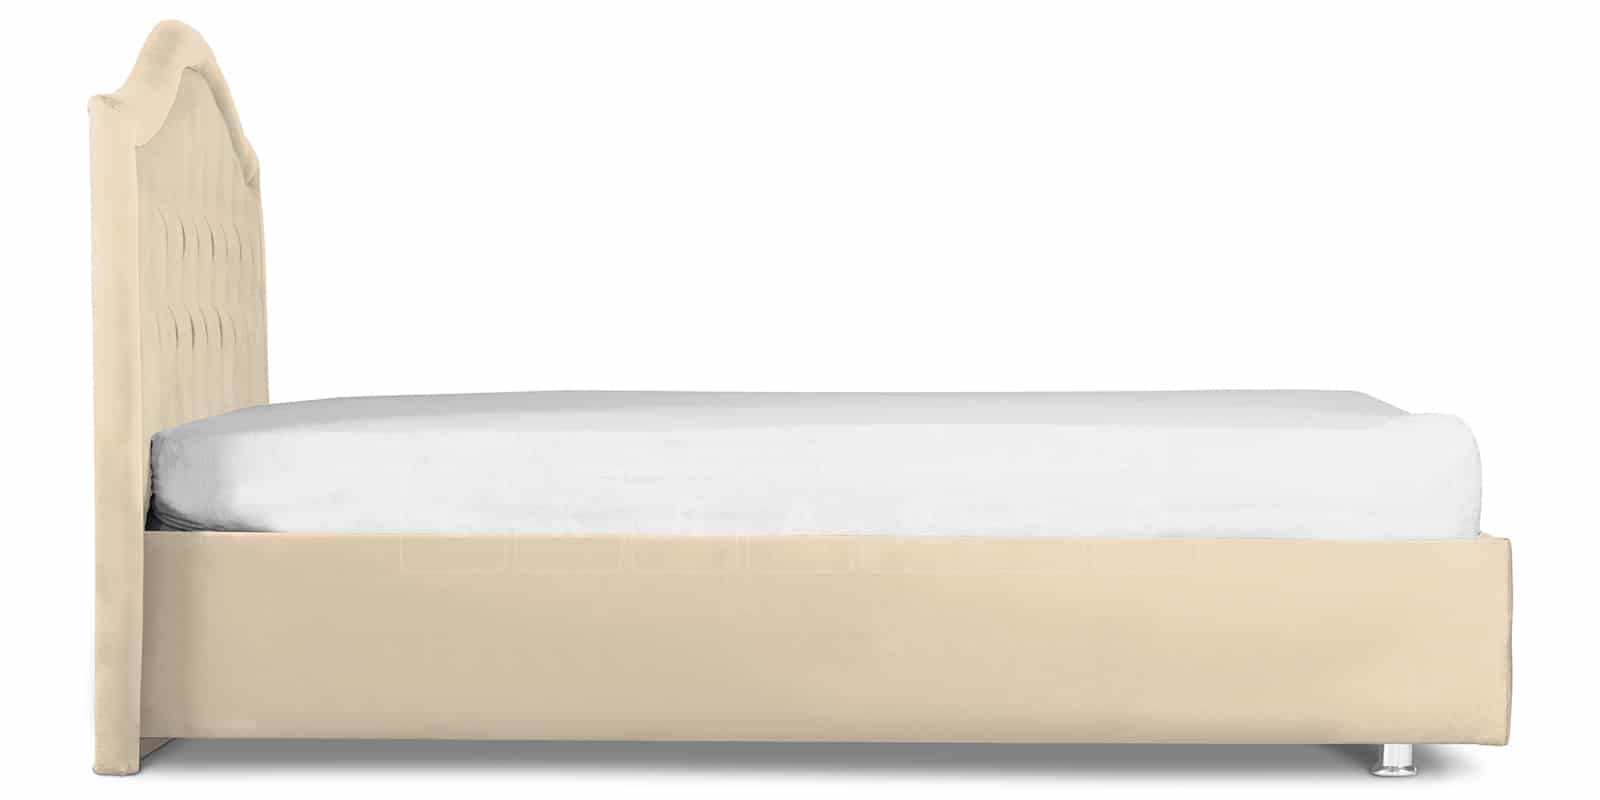 Мягкая кровать Малибу 160см экокожа бежевый вариант 9-2 фото 3 | интернет-магазин Складно